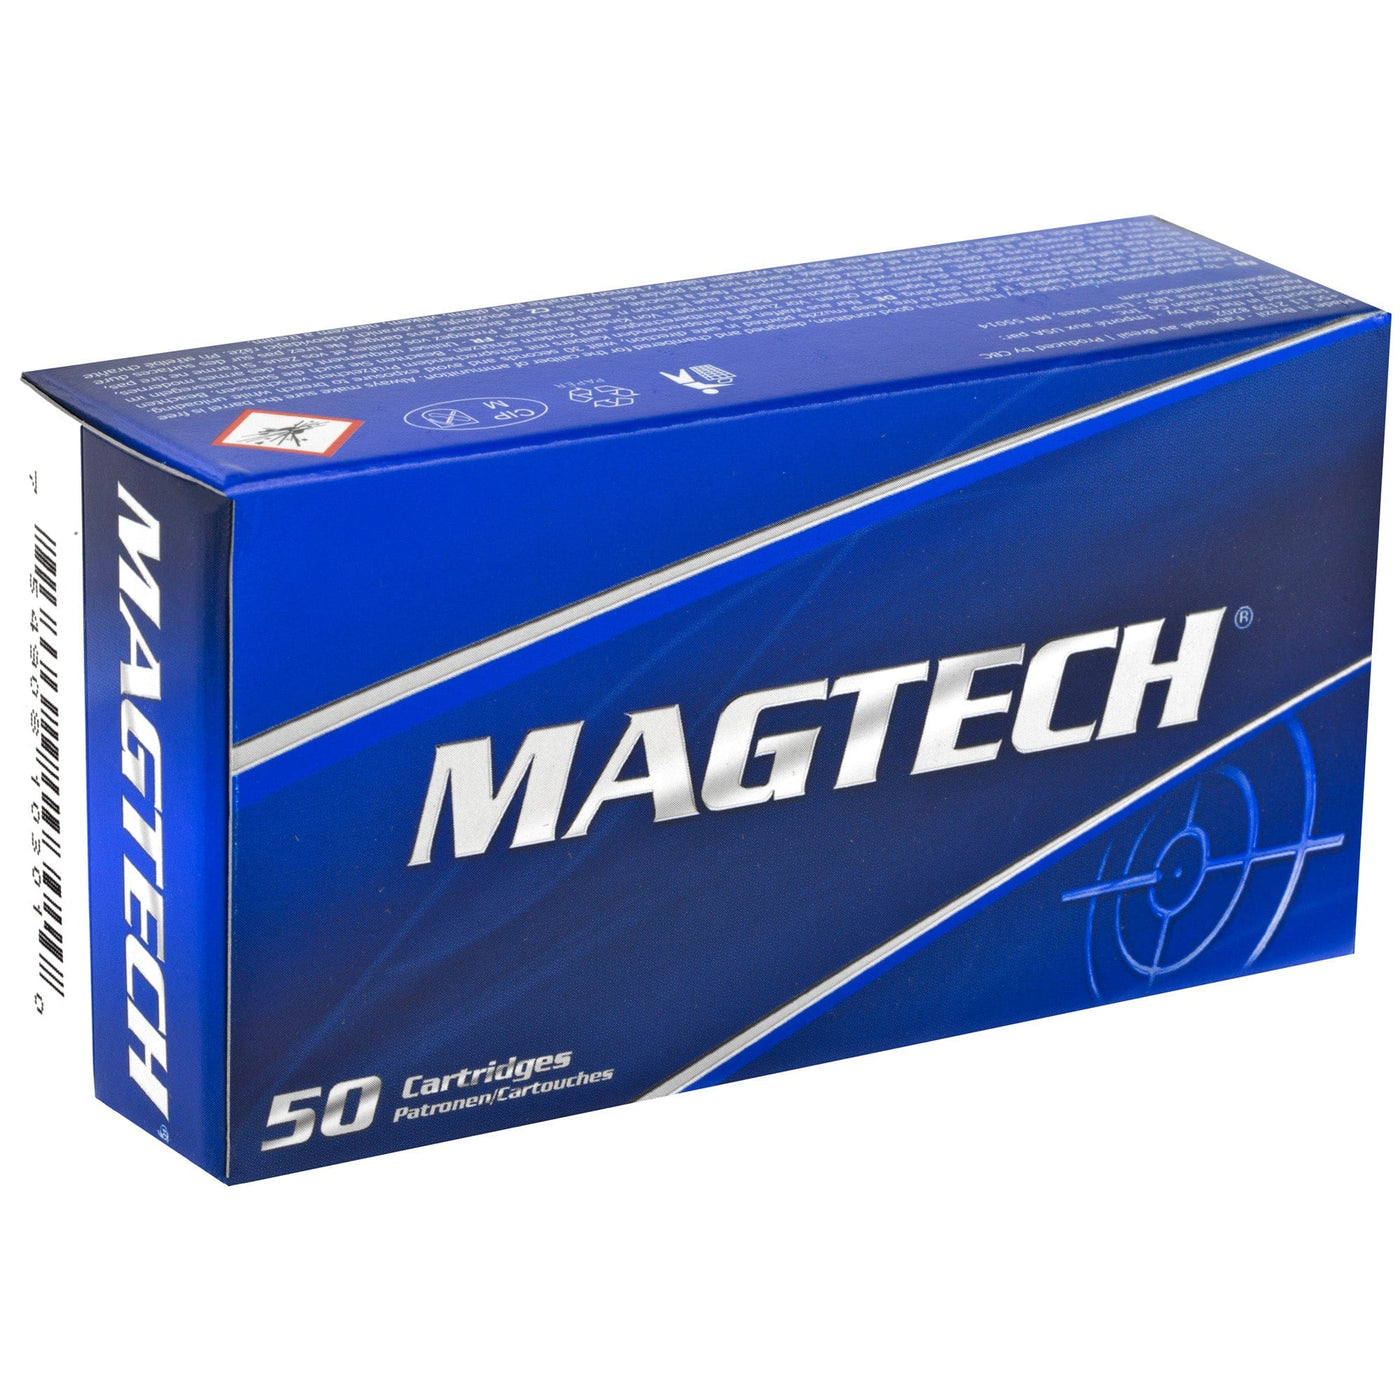 Magtech Magtech 32 S&w L 98gr 50/1000 Ammo